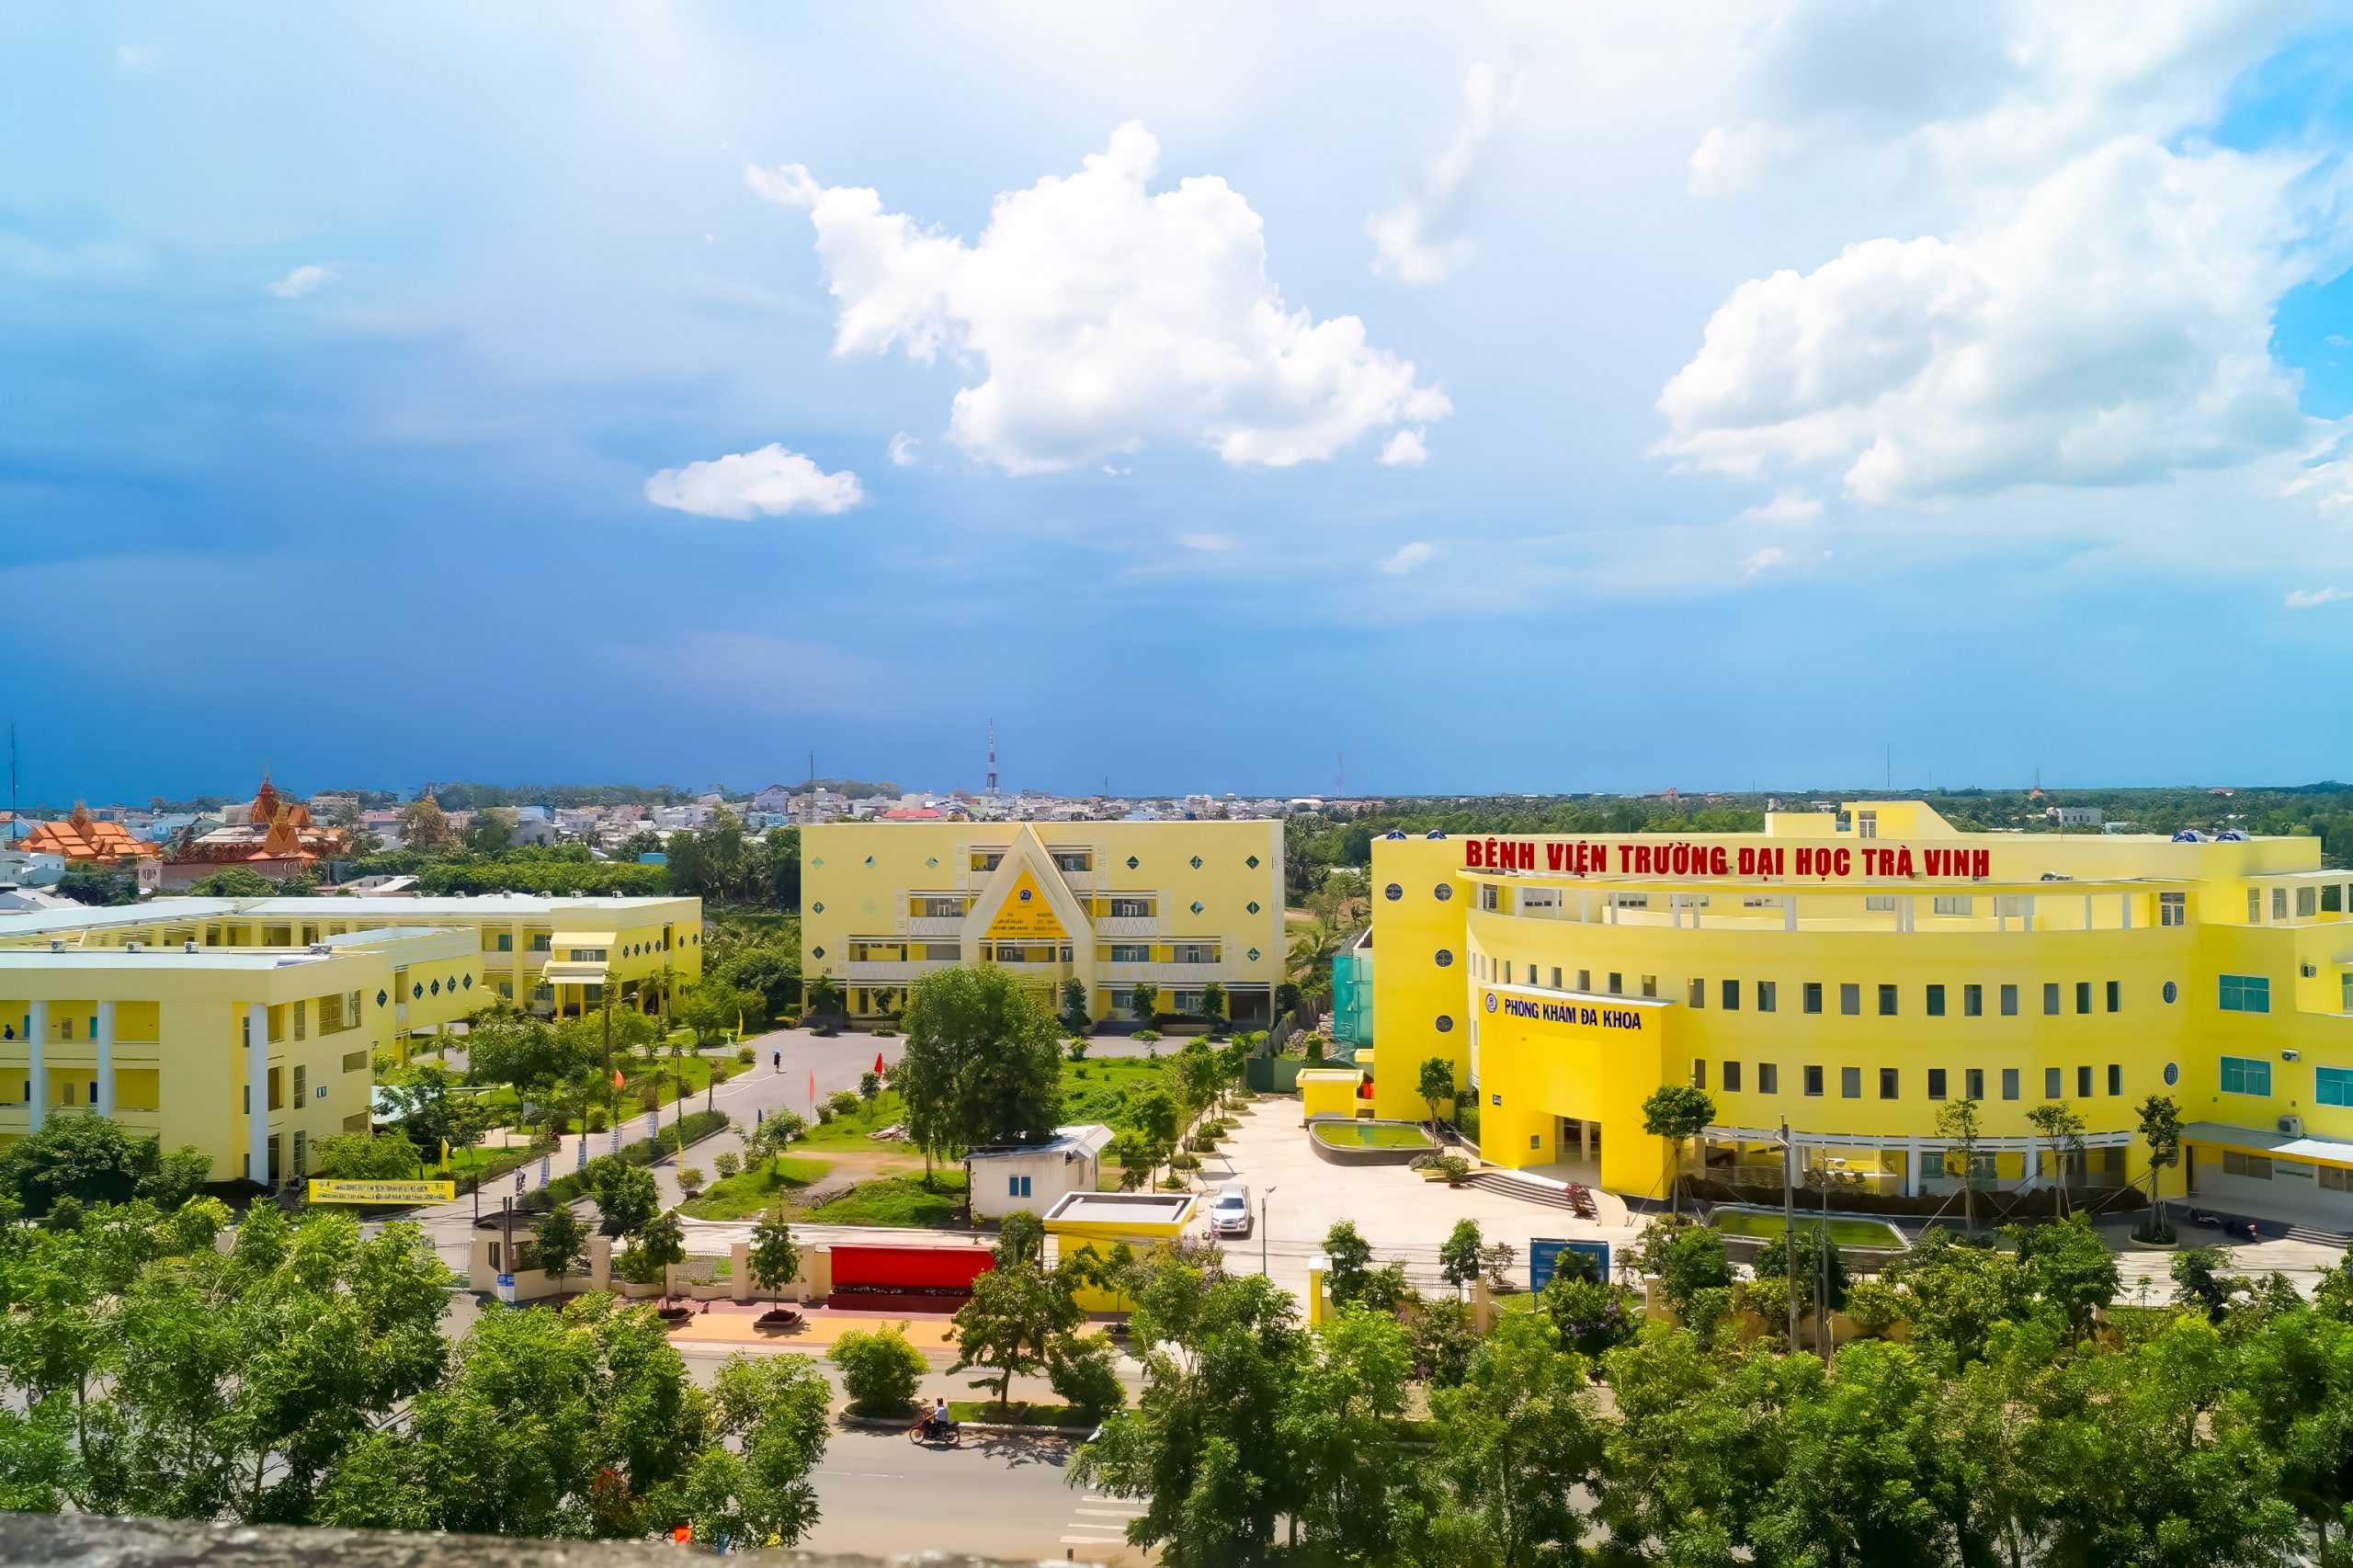 Bệnh viện Trường Đại học Trà Vinh đạt chuẩn Bệnh viện hạng II - tvu.edu.vn